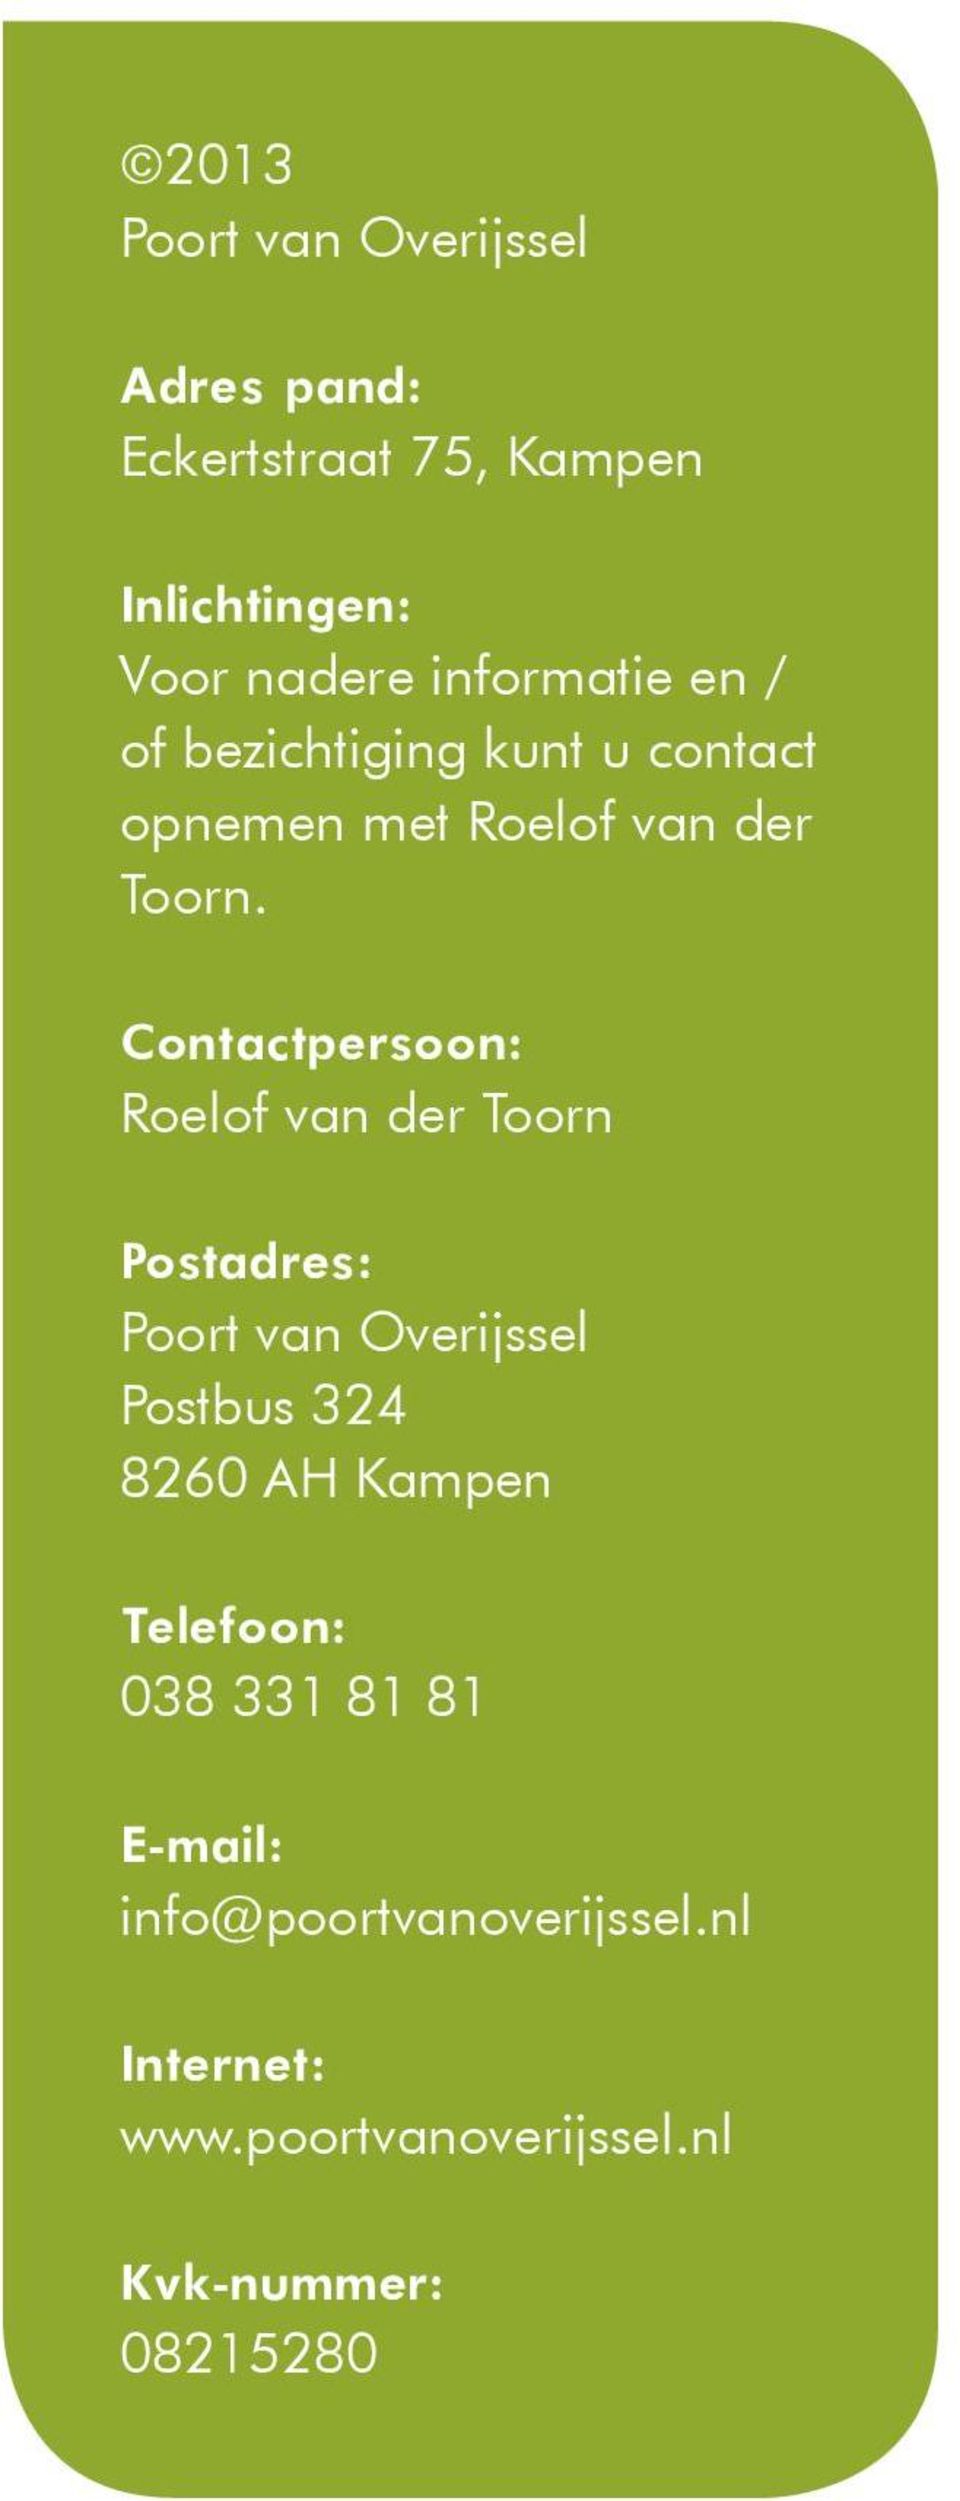 Contactpersoon: Roelof van der Toorn Postadres: Poort van Overijssel Postbus 324 8260 AH